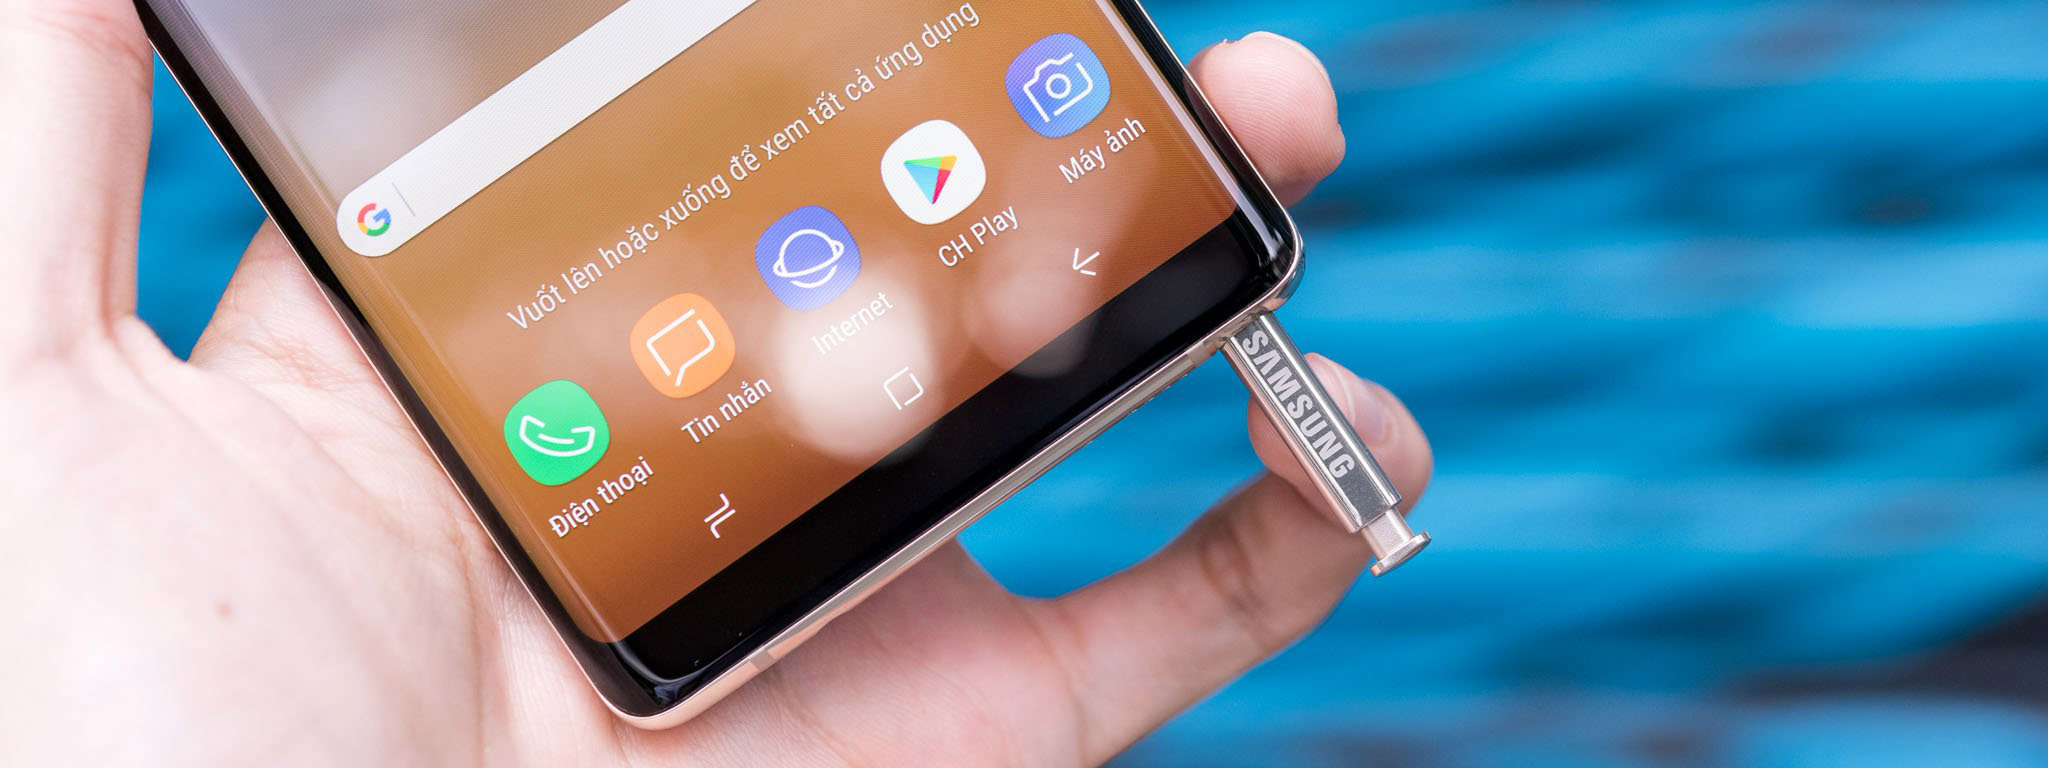 Samsung đã bắt đầu sản xuất màn hình AMOLED cho Galaxy Note 9?